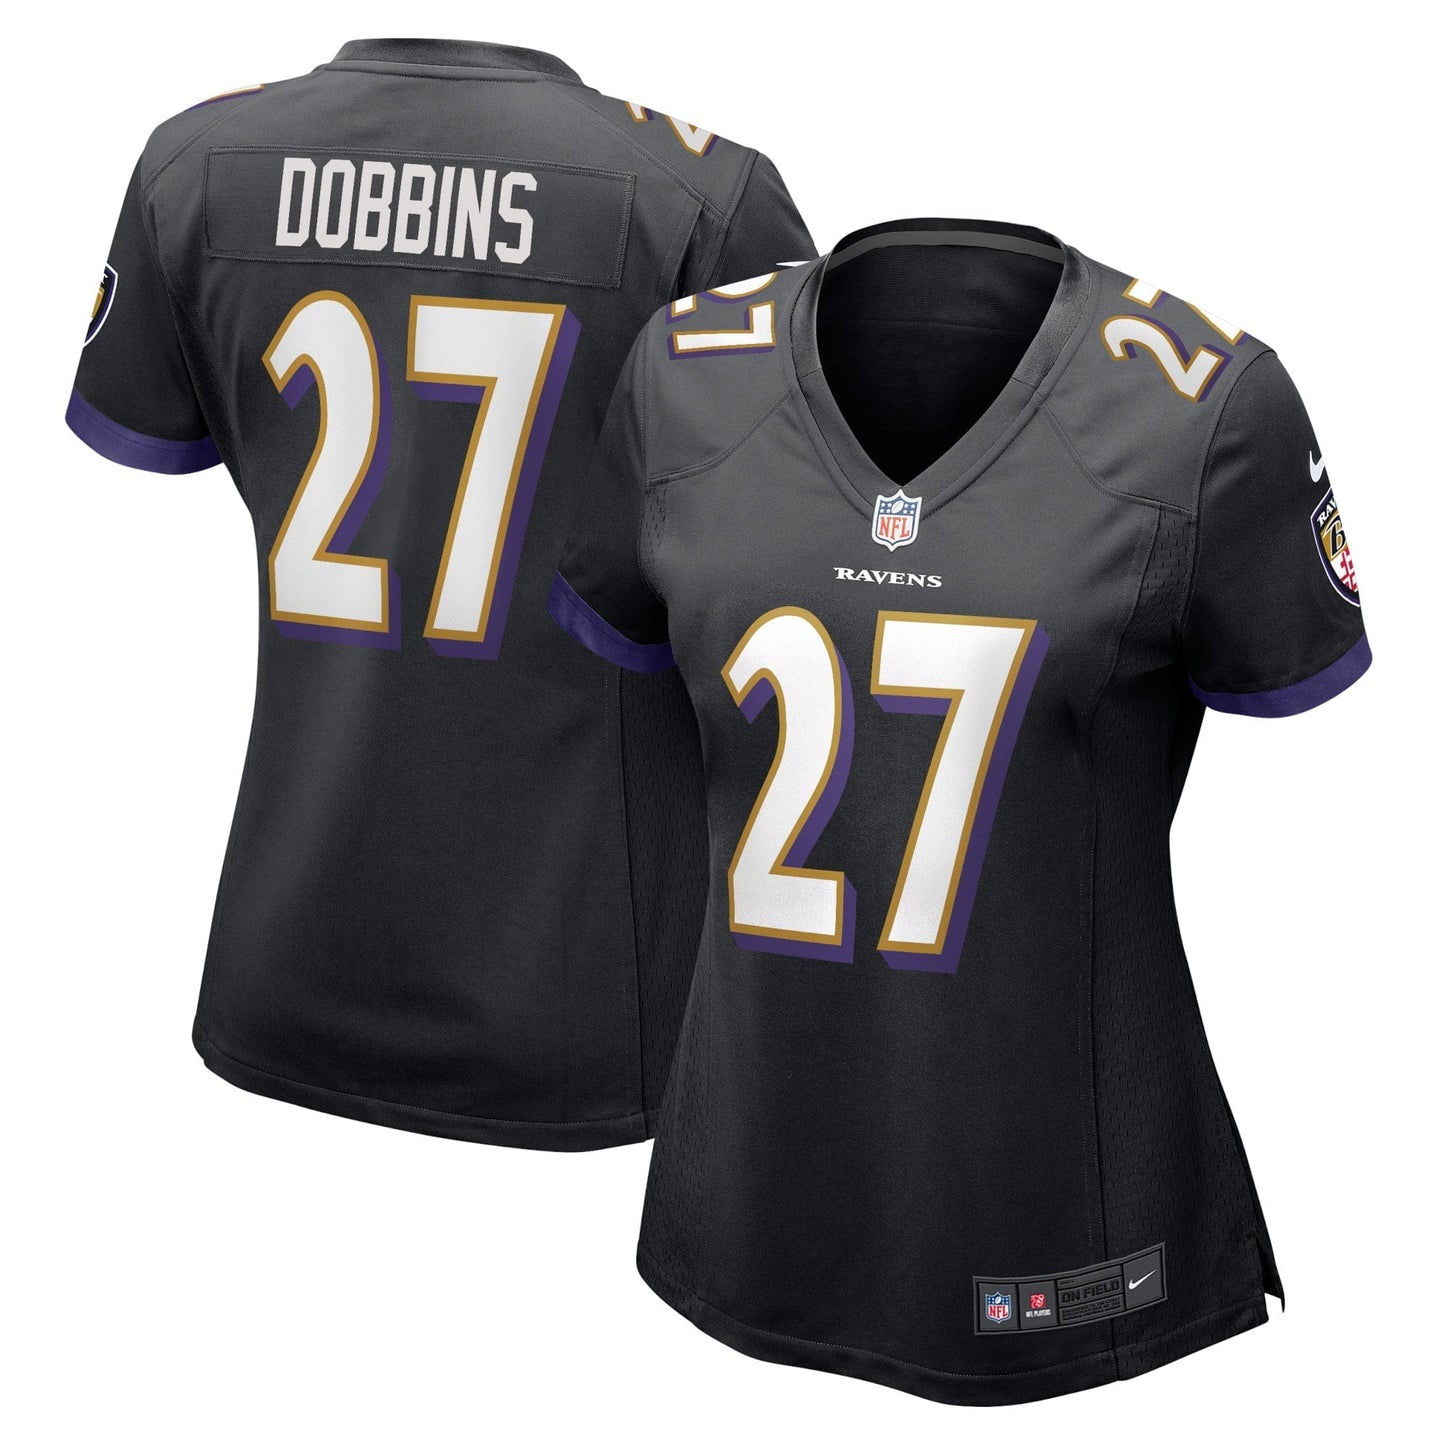 Women's Nike J.K. Dobbins Black Baltimore Ravens Game Jersey